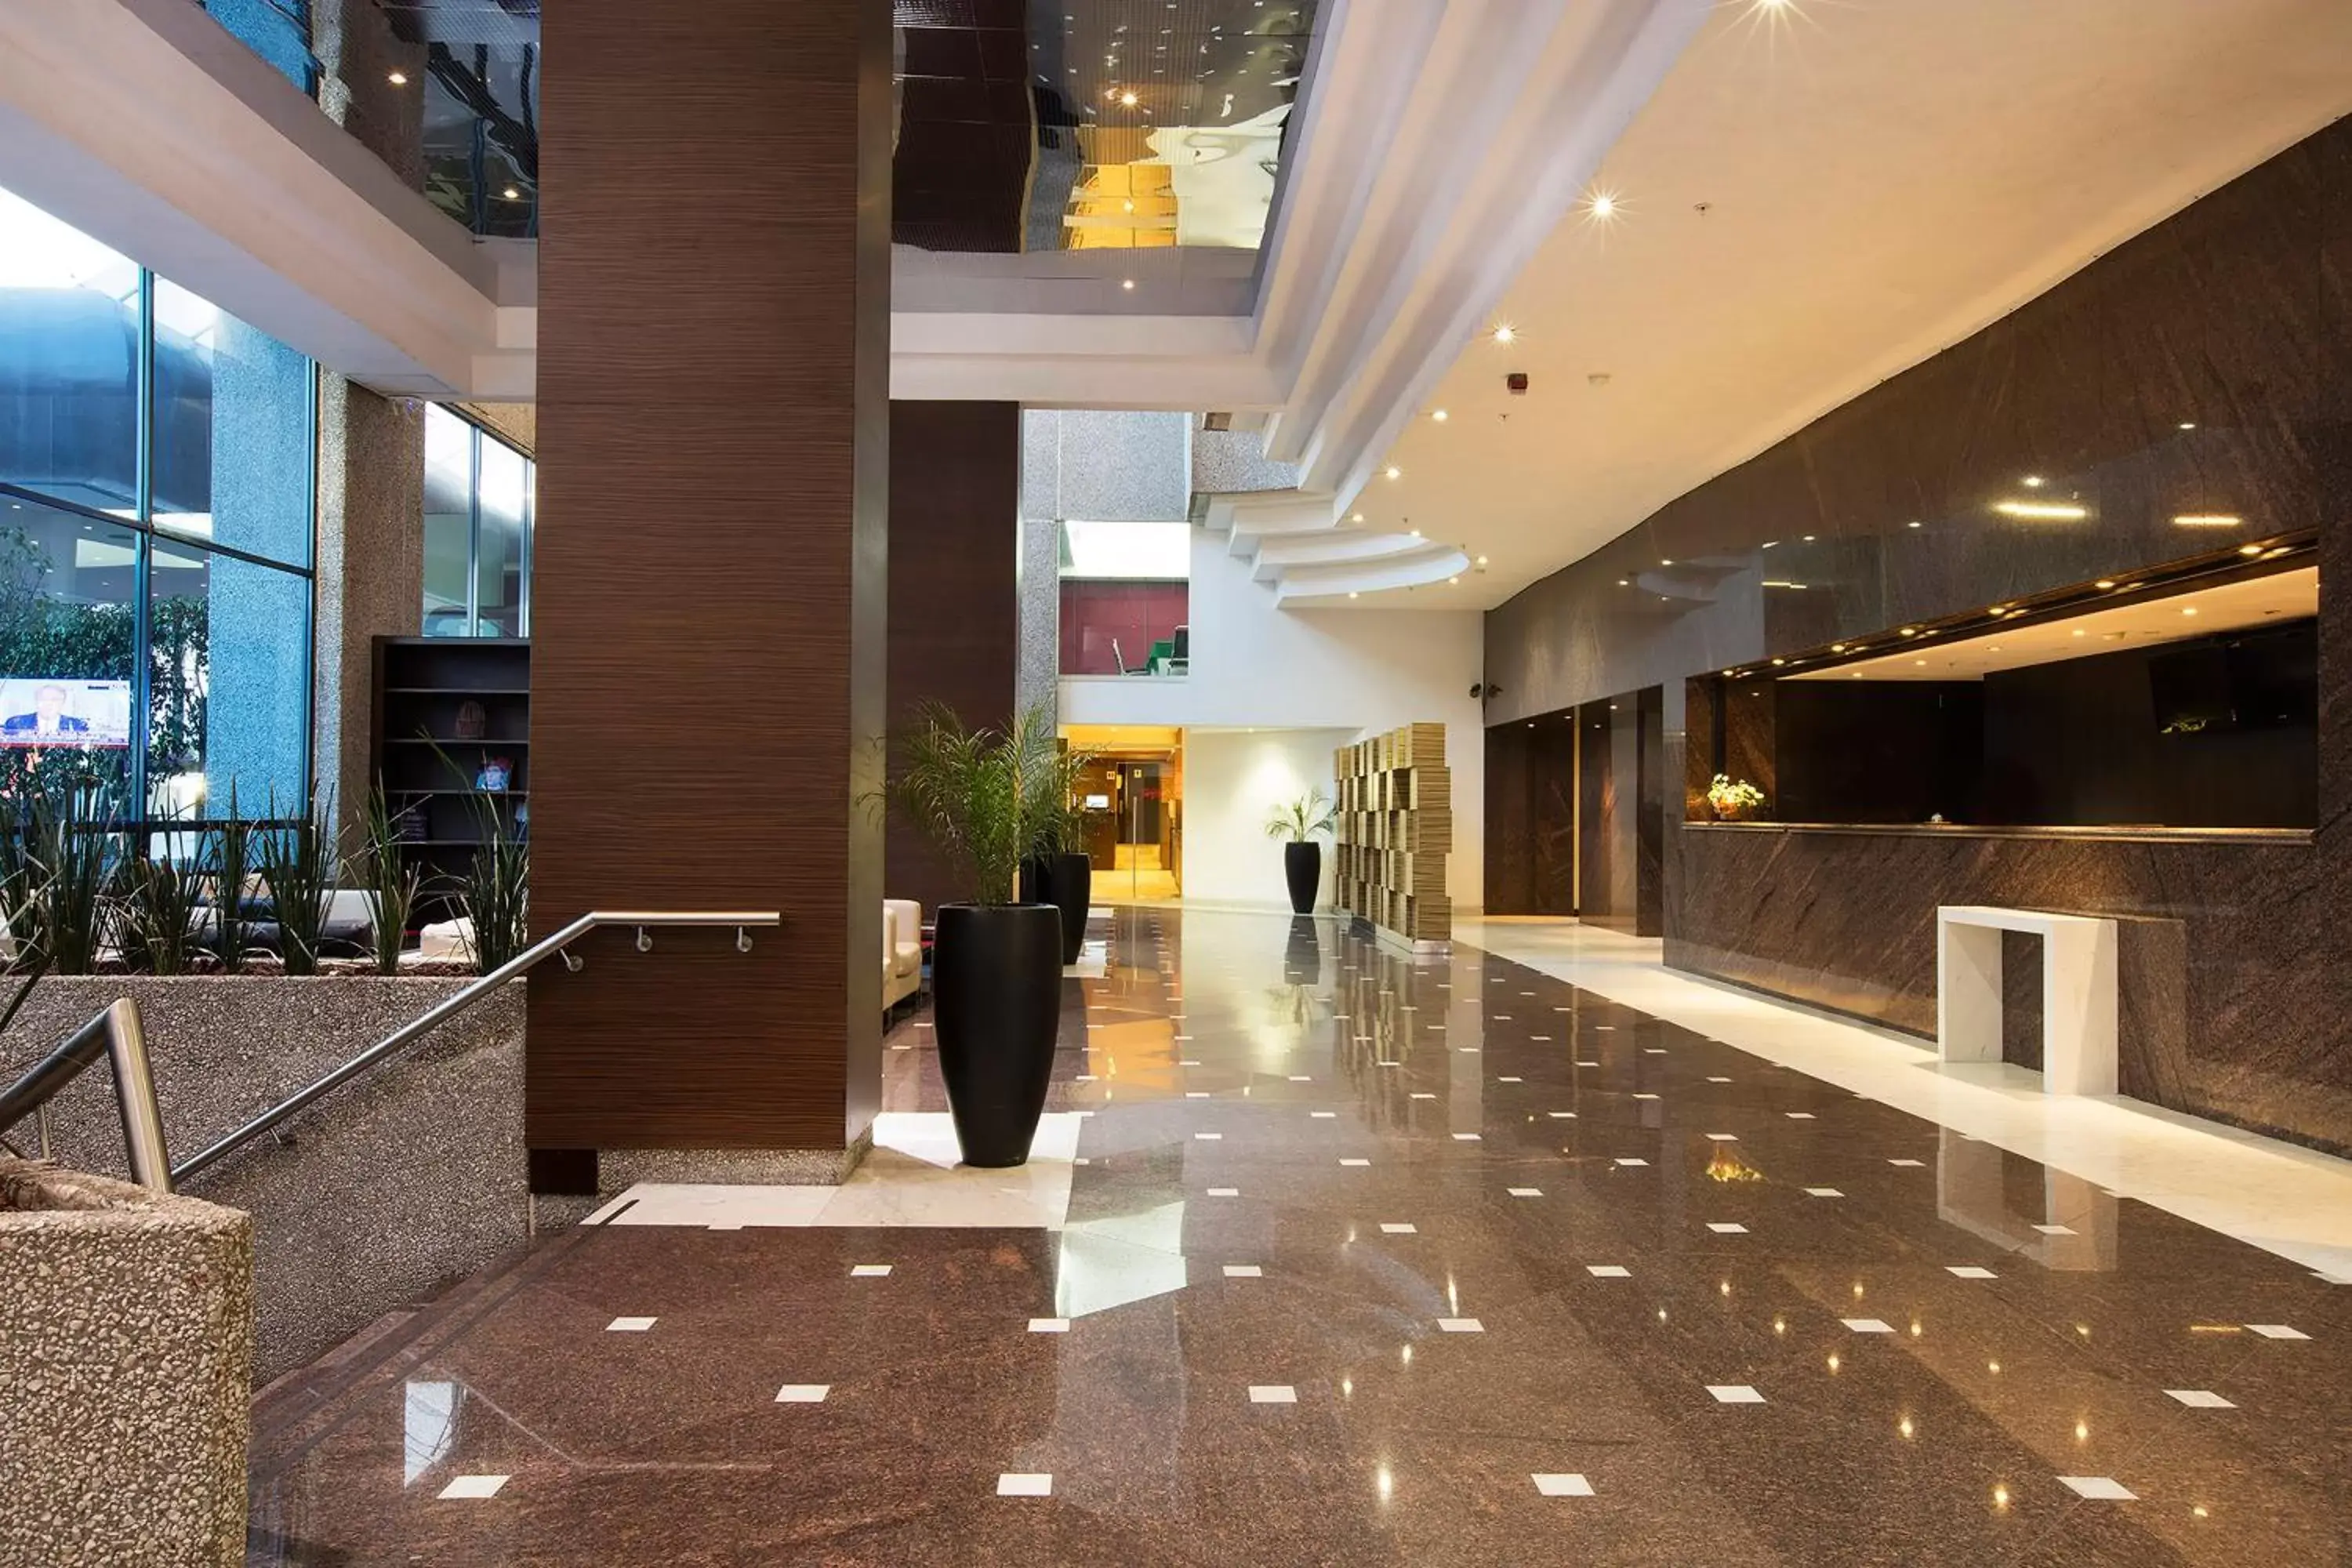 Lobby or reception, Lobby/Reception in Krystal Urban Aeropuerto Ciudad de Mexico